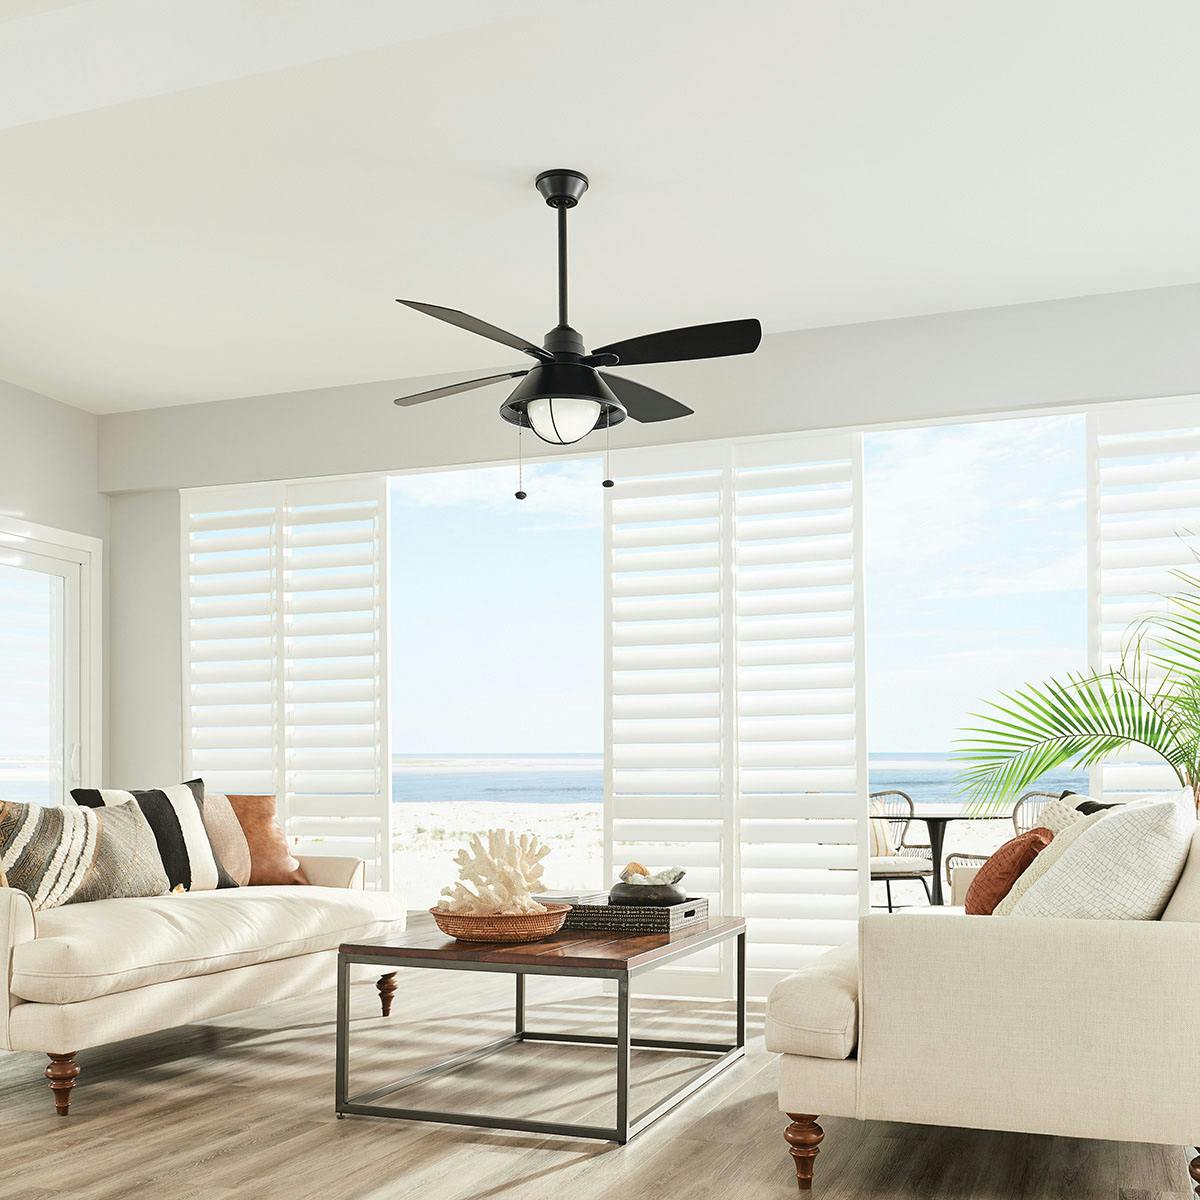 Living room featuring Seaside ceiling fan 310181SBK